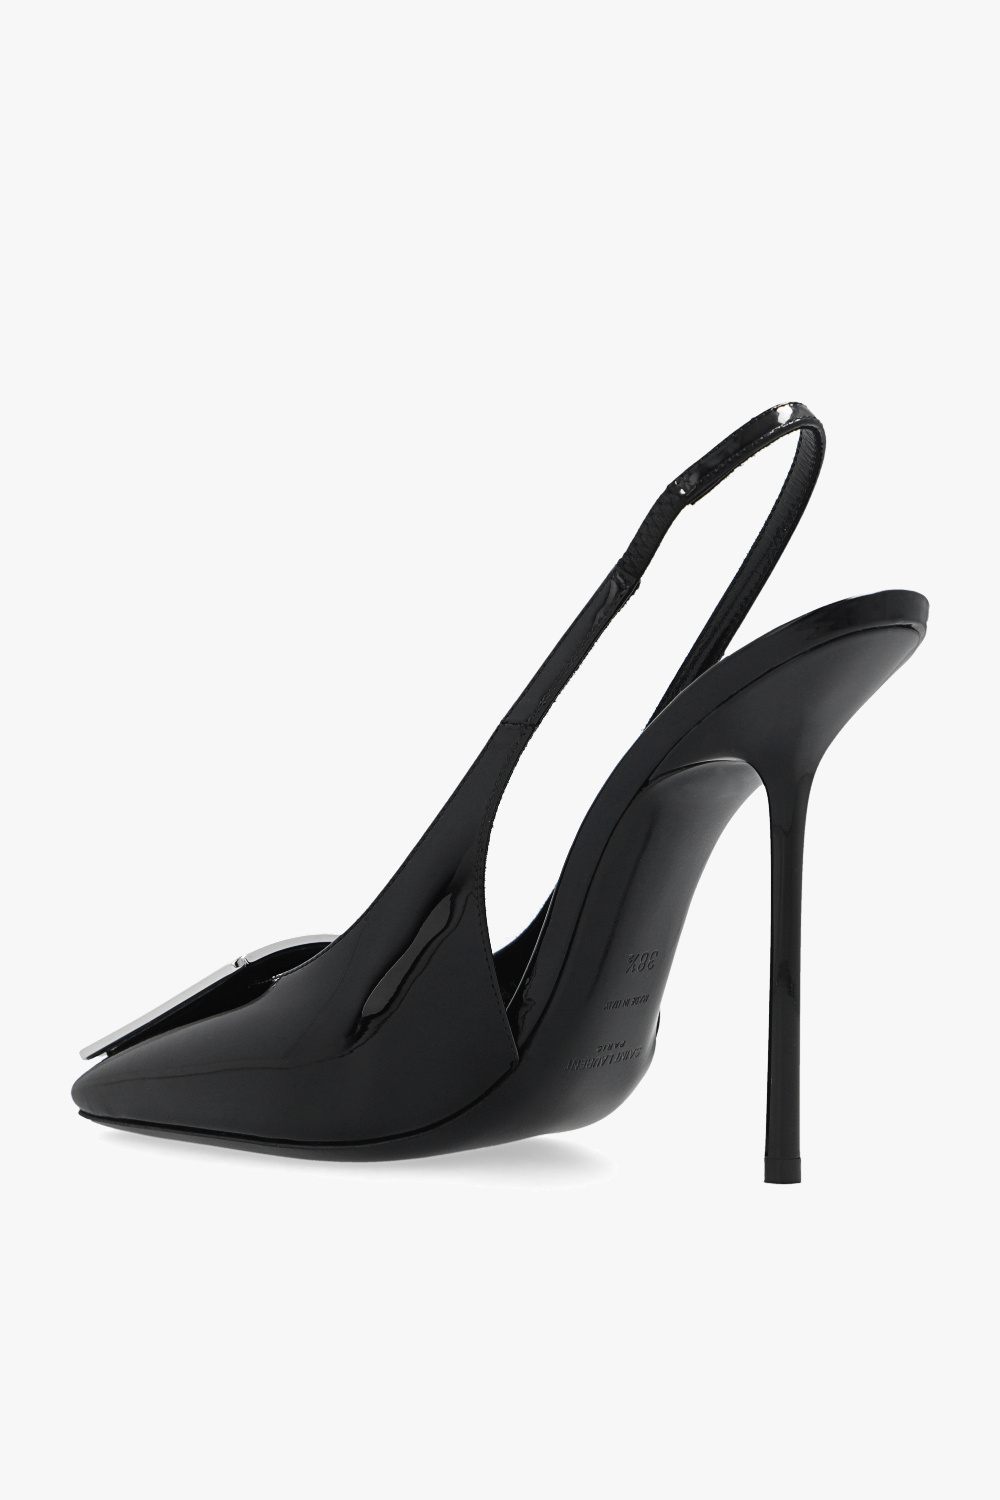 Saint Laurent ‘Maxine Slingback’ pumps | Women's Shoes | Vitkac